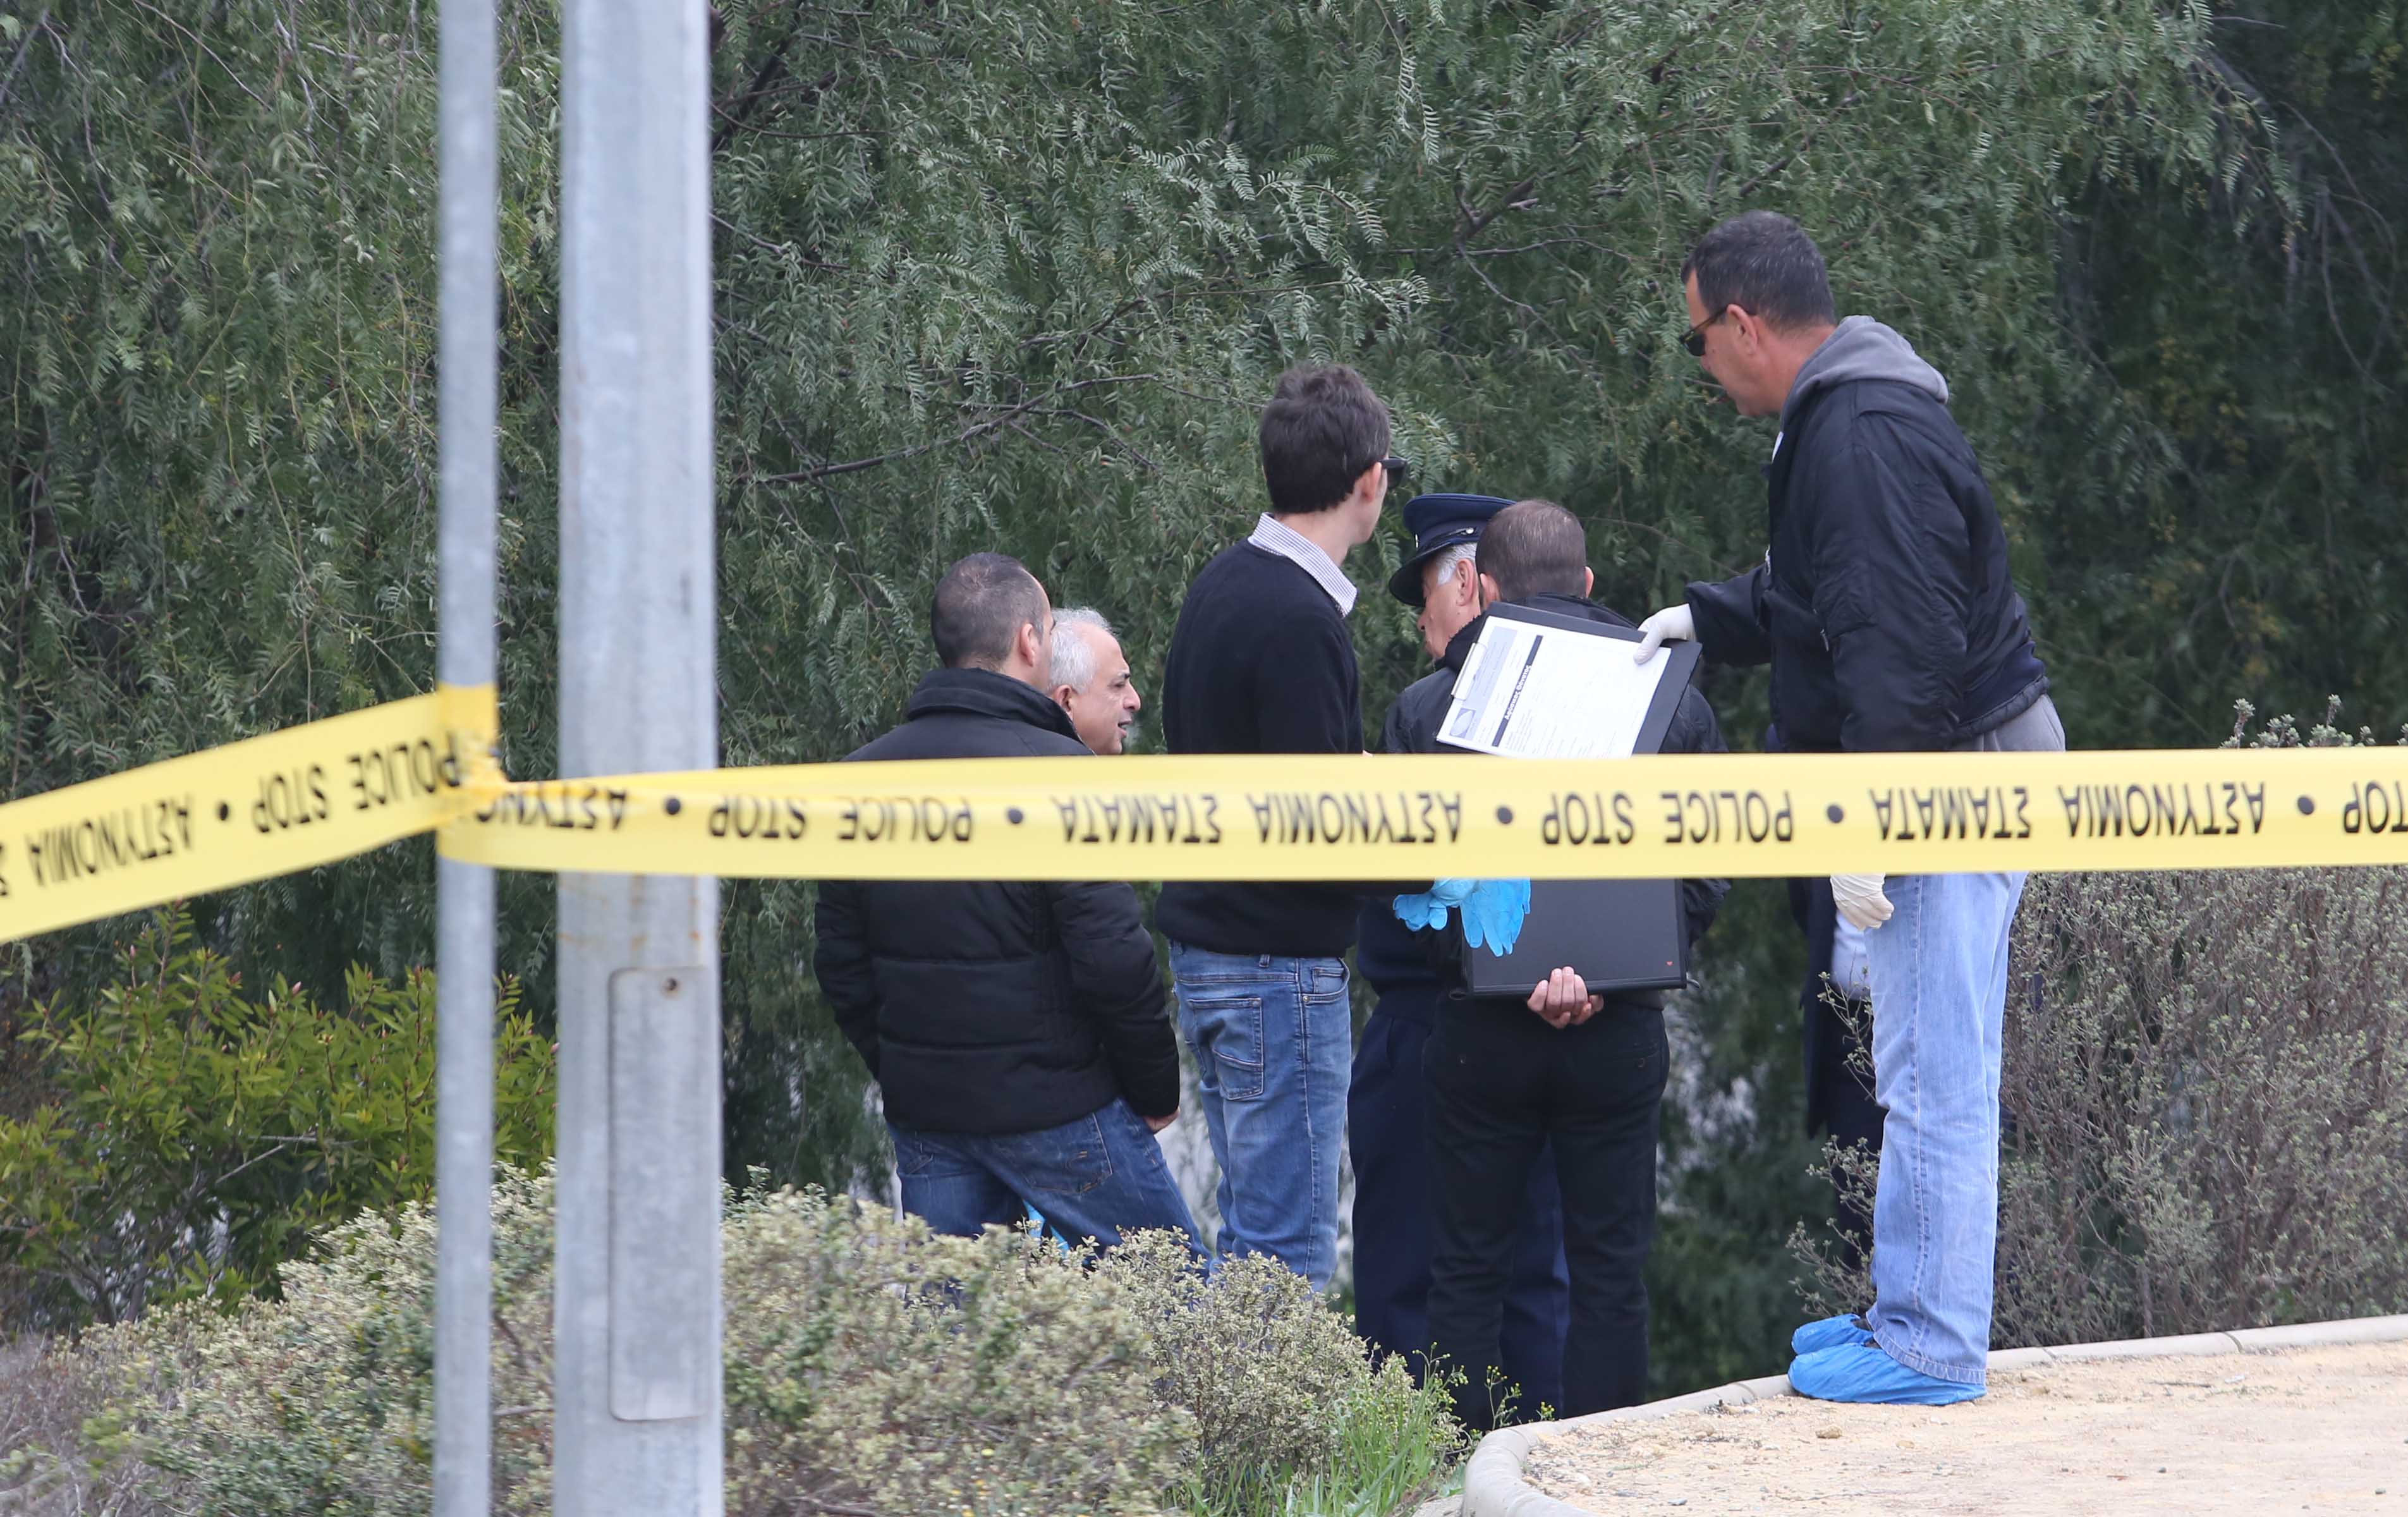 ΛΑΚΑΤΑΜΙΑ: Νεκρός νεαρός σε πάρκο- Εντοπίστηκε σε λίμνη αίματος- Ανοικτό το ενδεχόμενο για εγκληματική ενέργεια